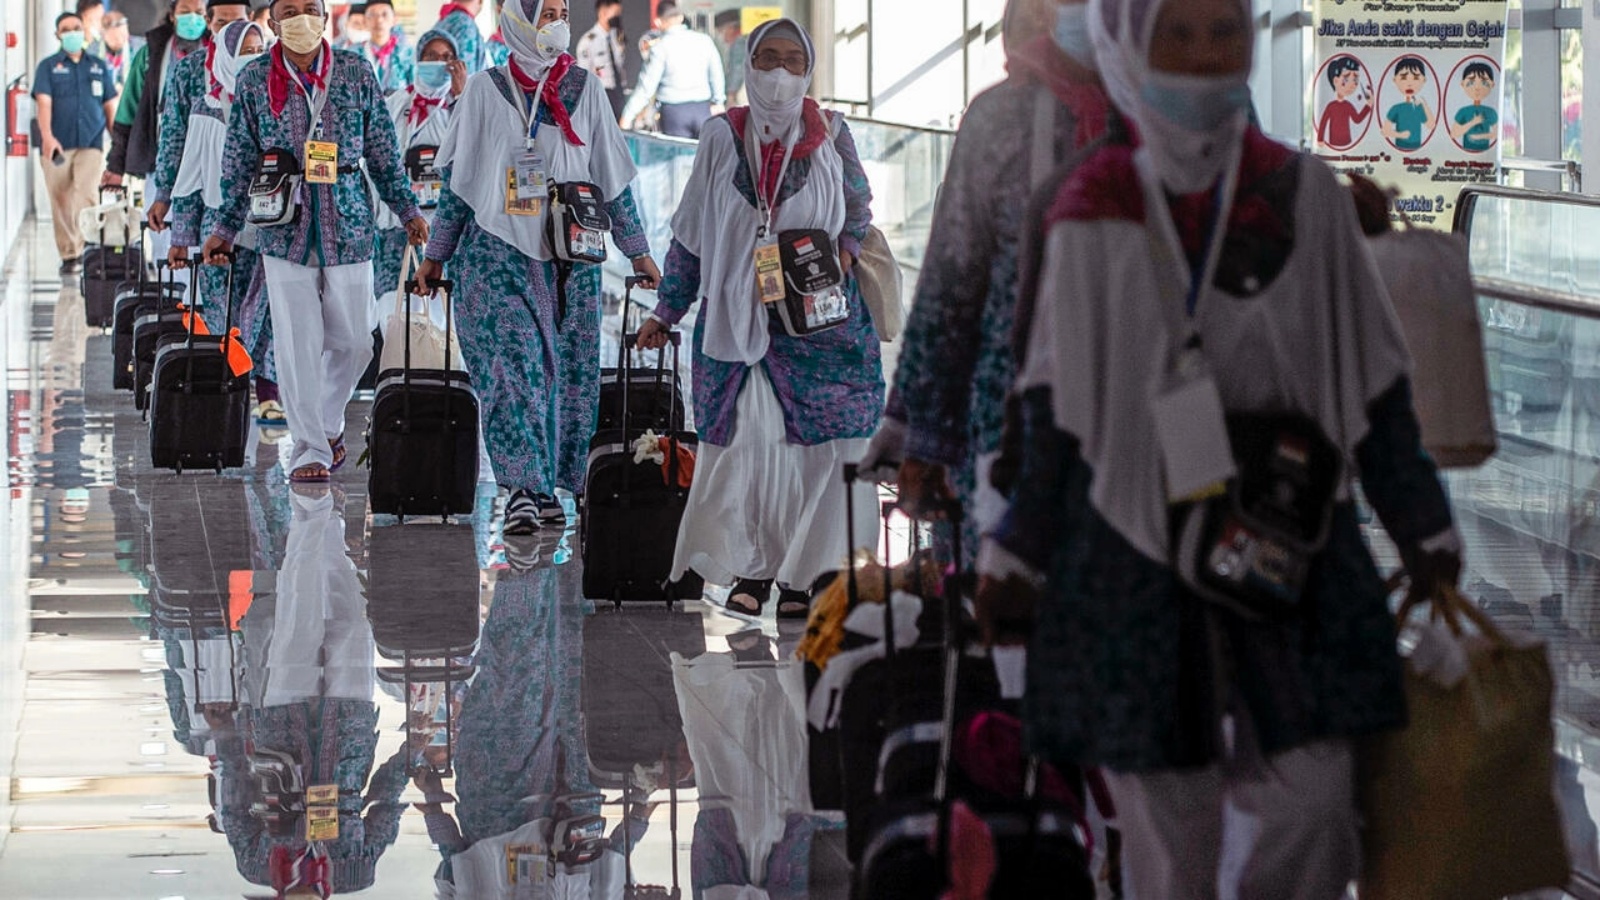 حجاج اندونيسيون يستعدون لمغادرة البلاد نحو السعودية لأداء مناسك الحج في 4 يونيو 2022 